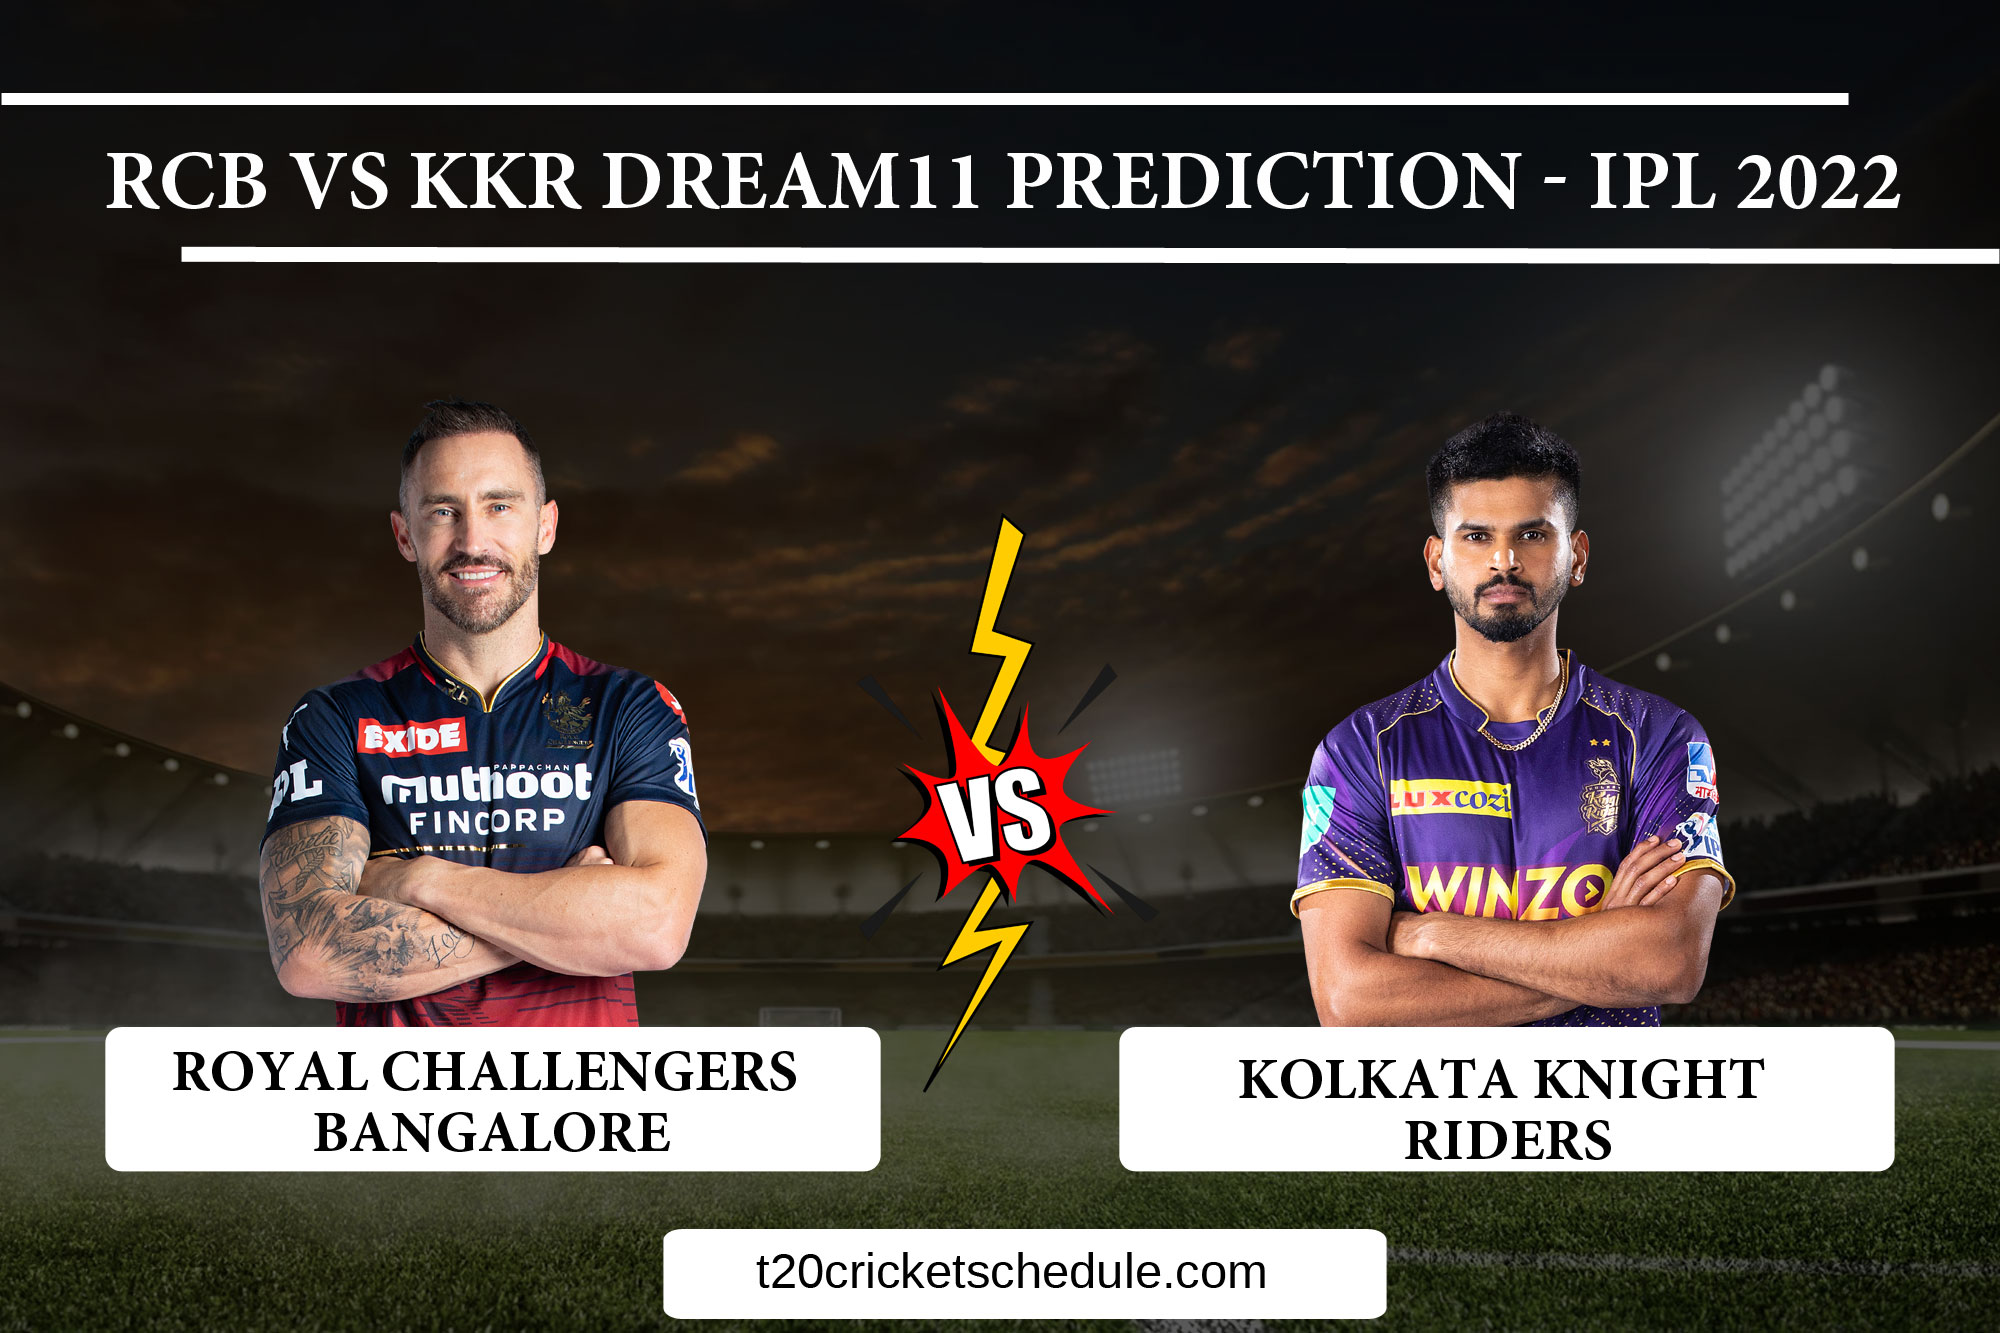 RCB vs KKR Dream11 Match Prediction - IPL 2022